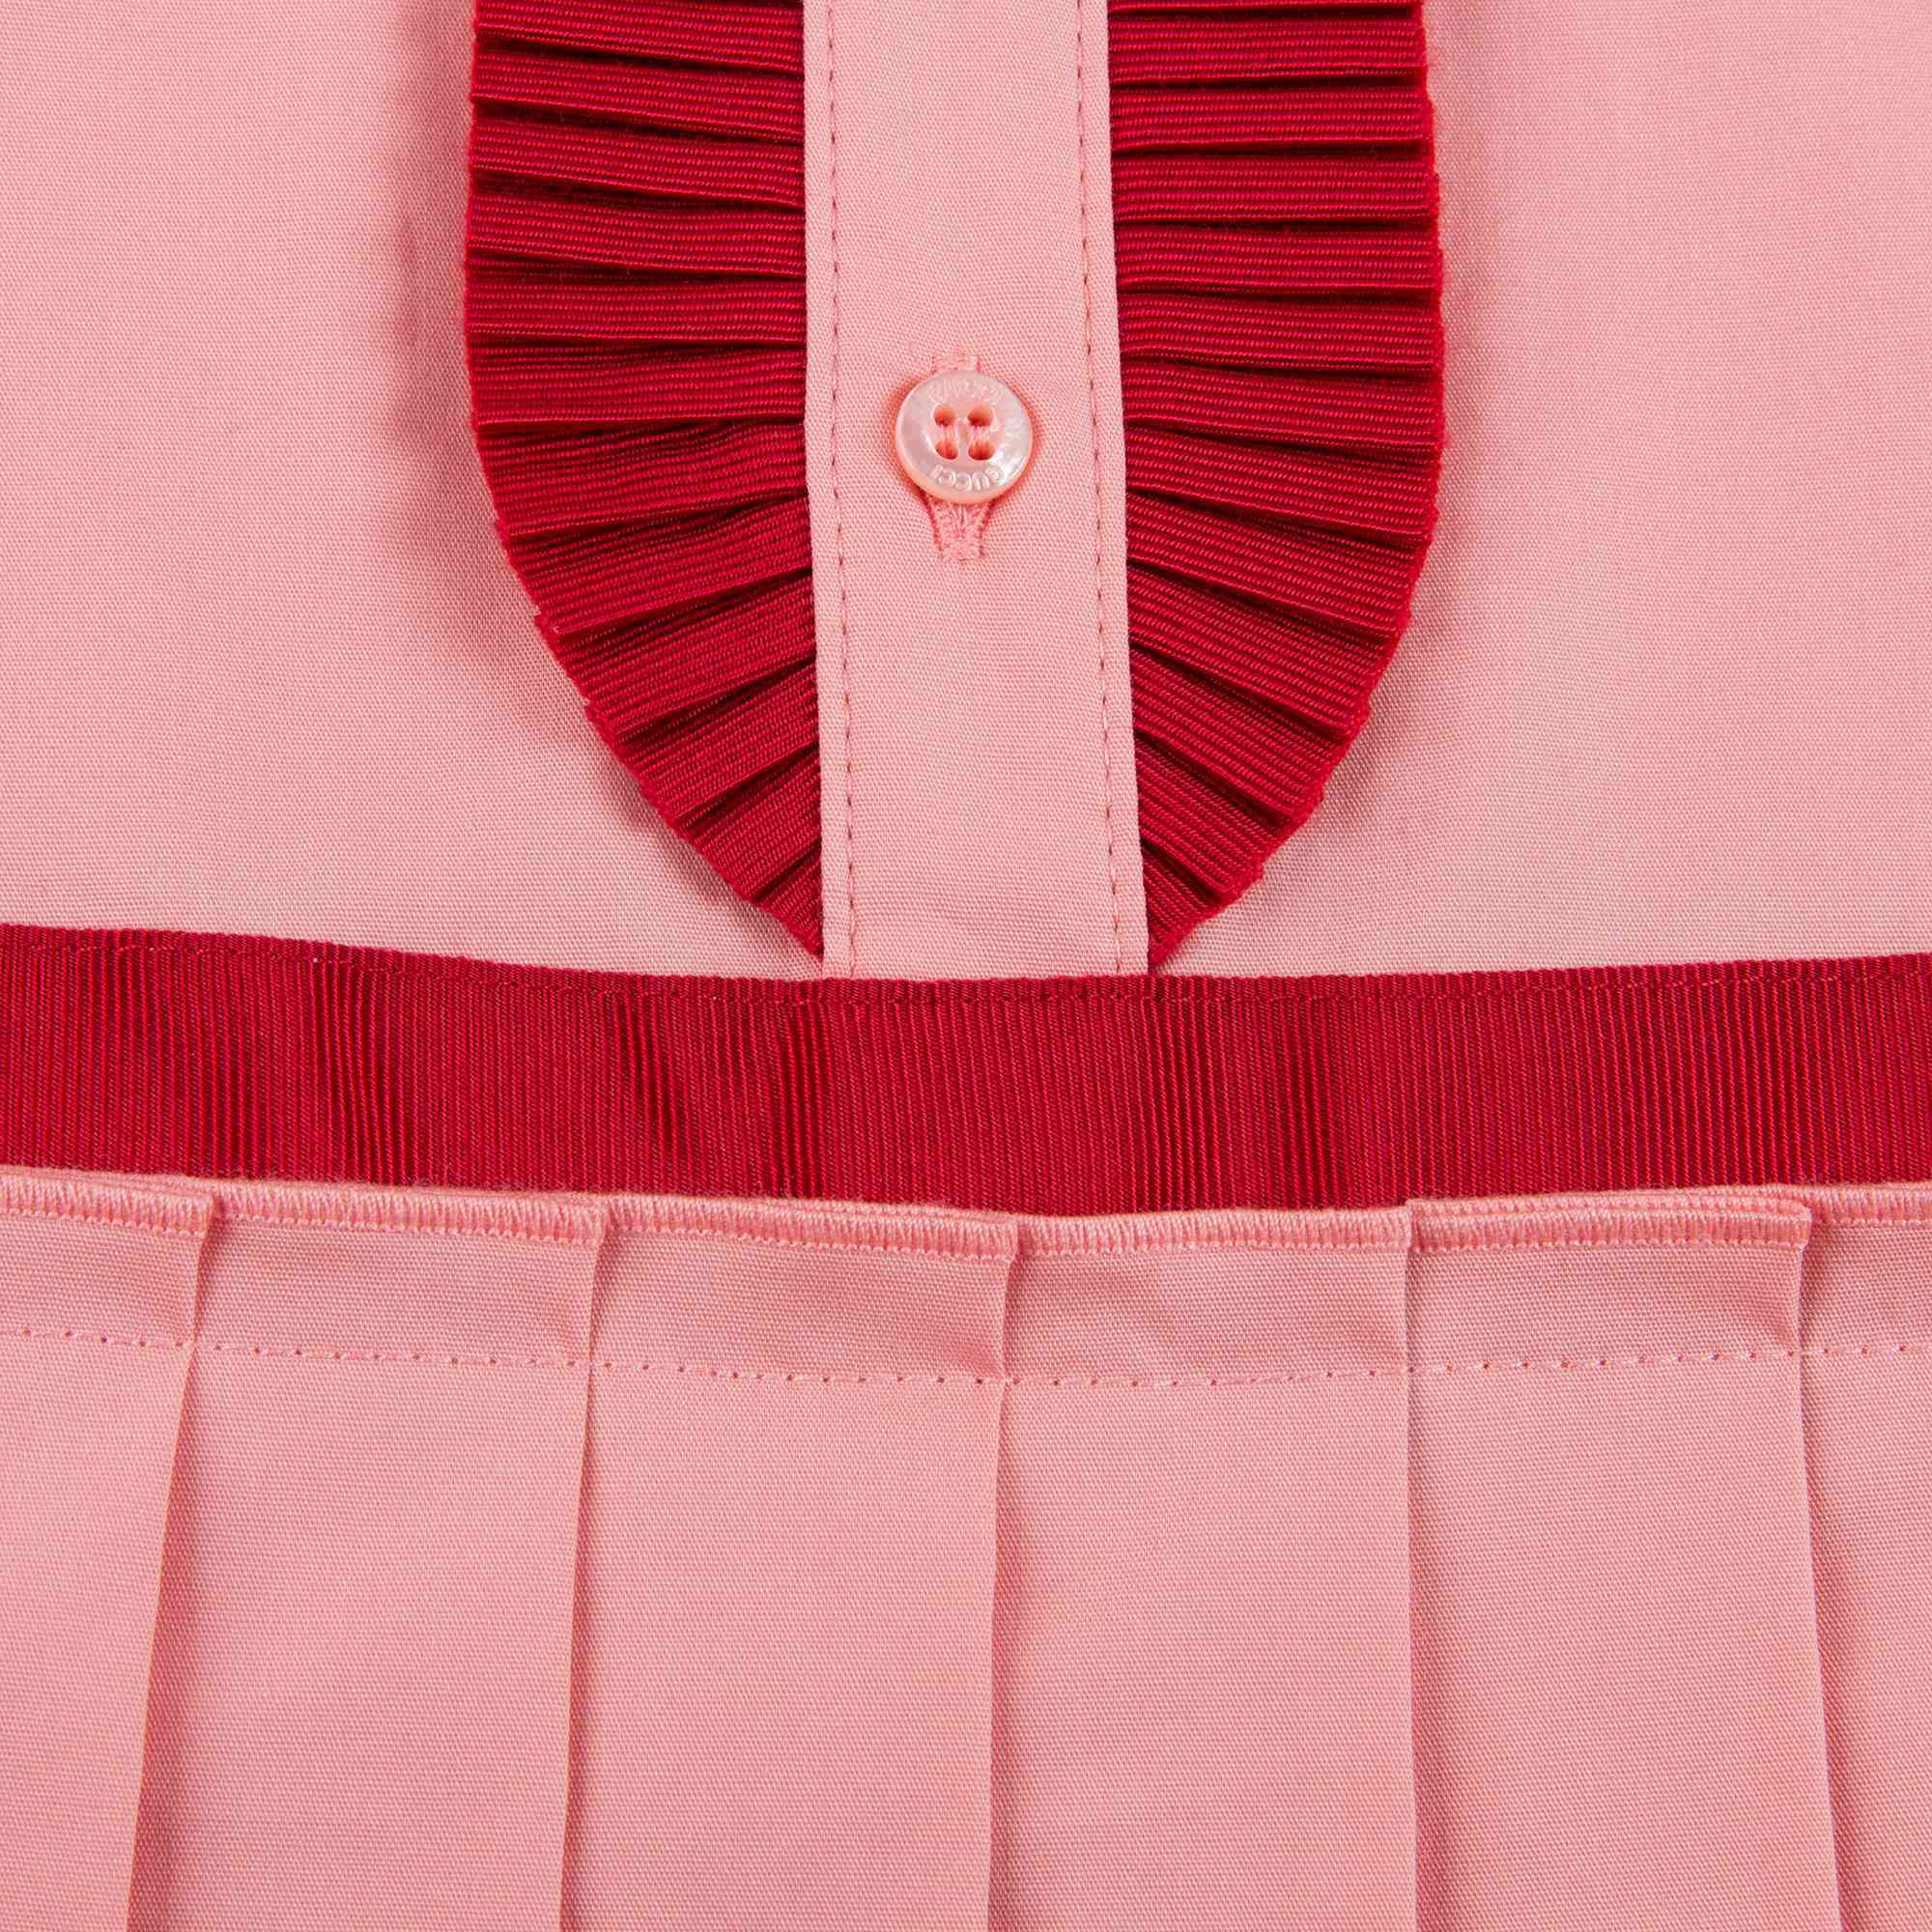 Girls Pink Cotton Frill Dress